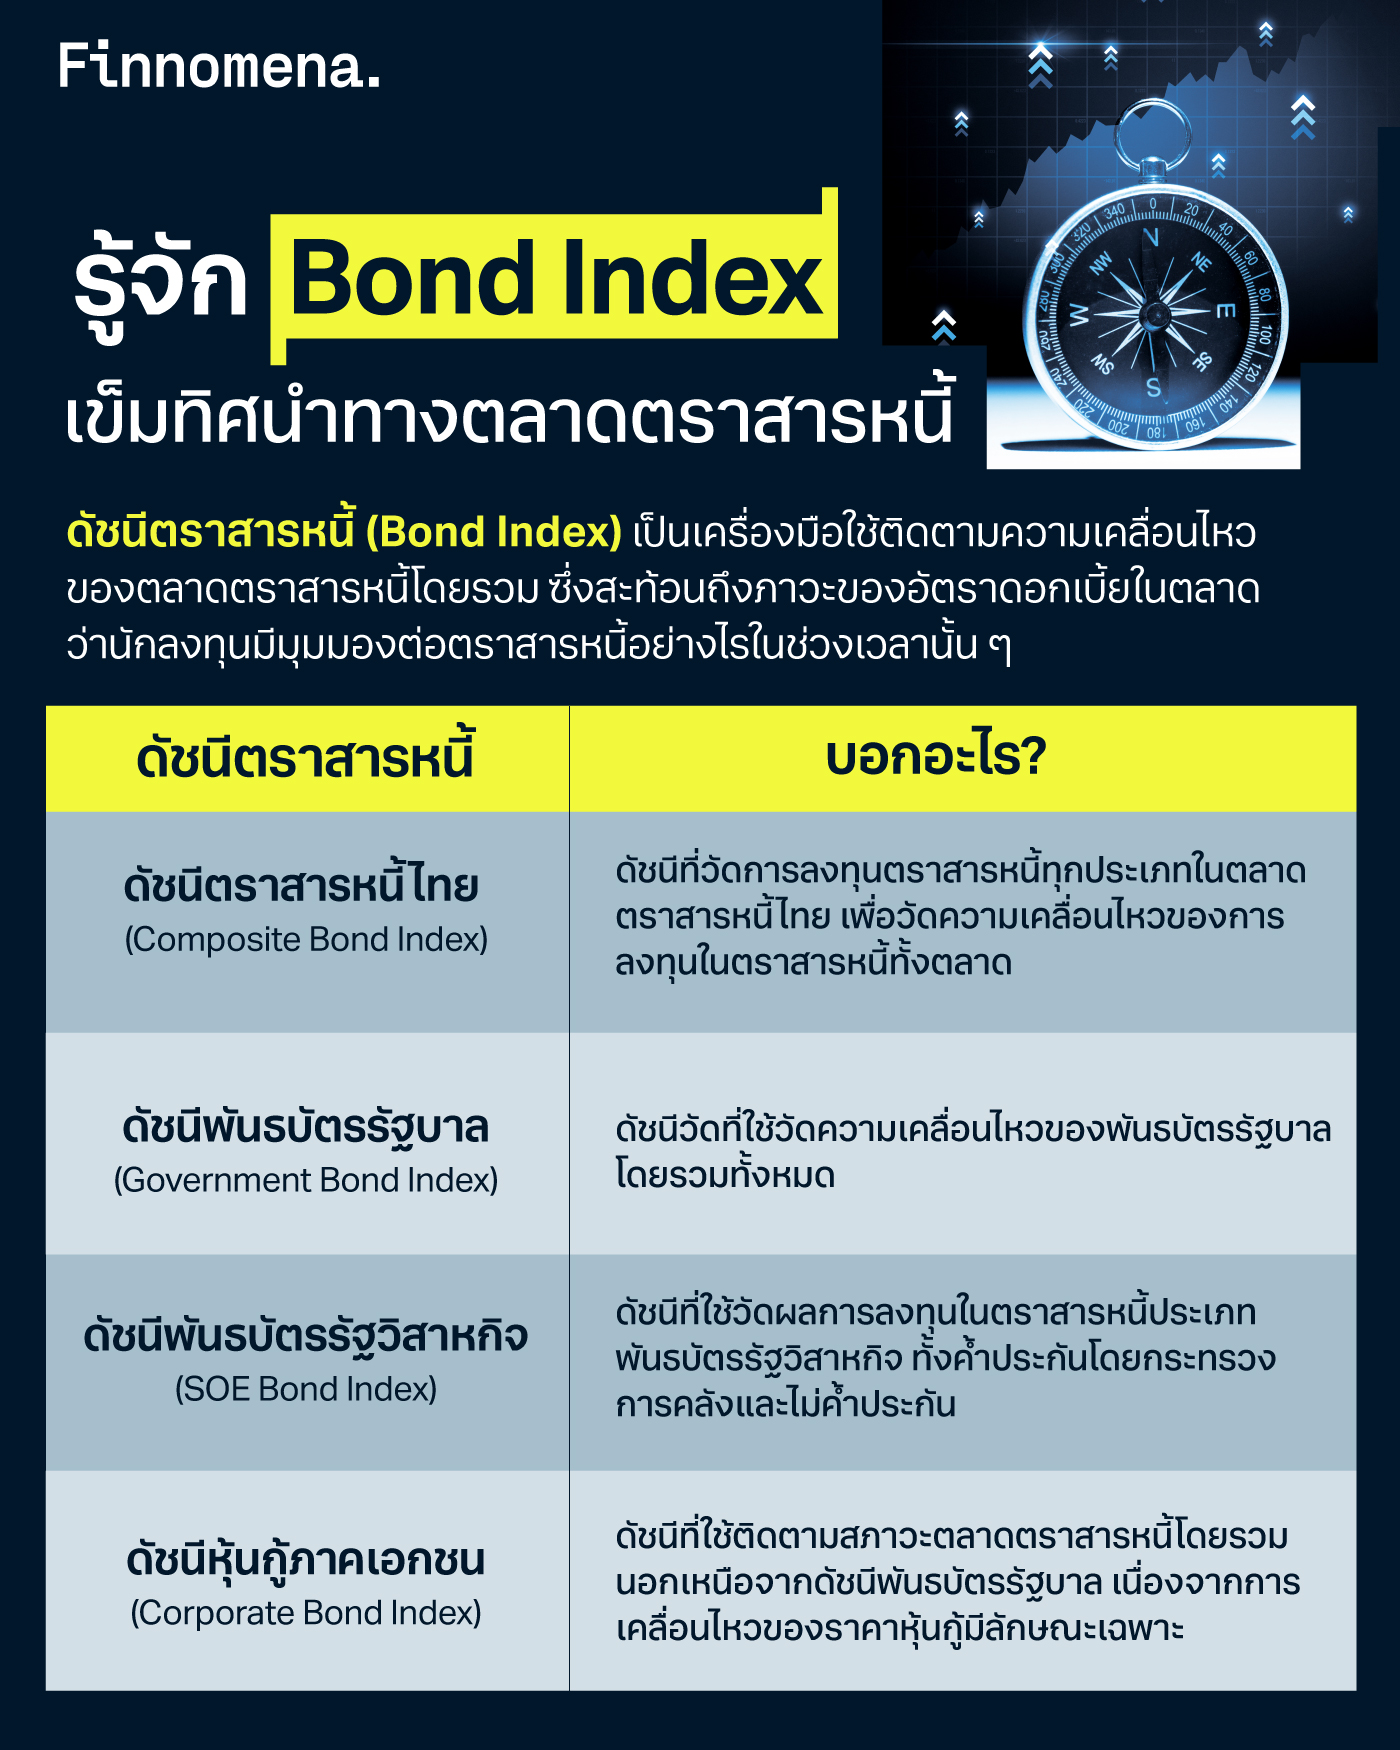 รู้จัก Bond Index: เข็มทิศนำทางตลาดตราสารหนี้